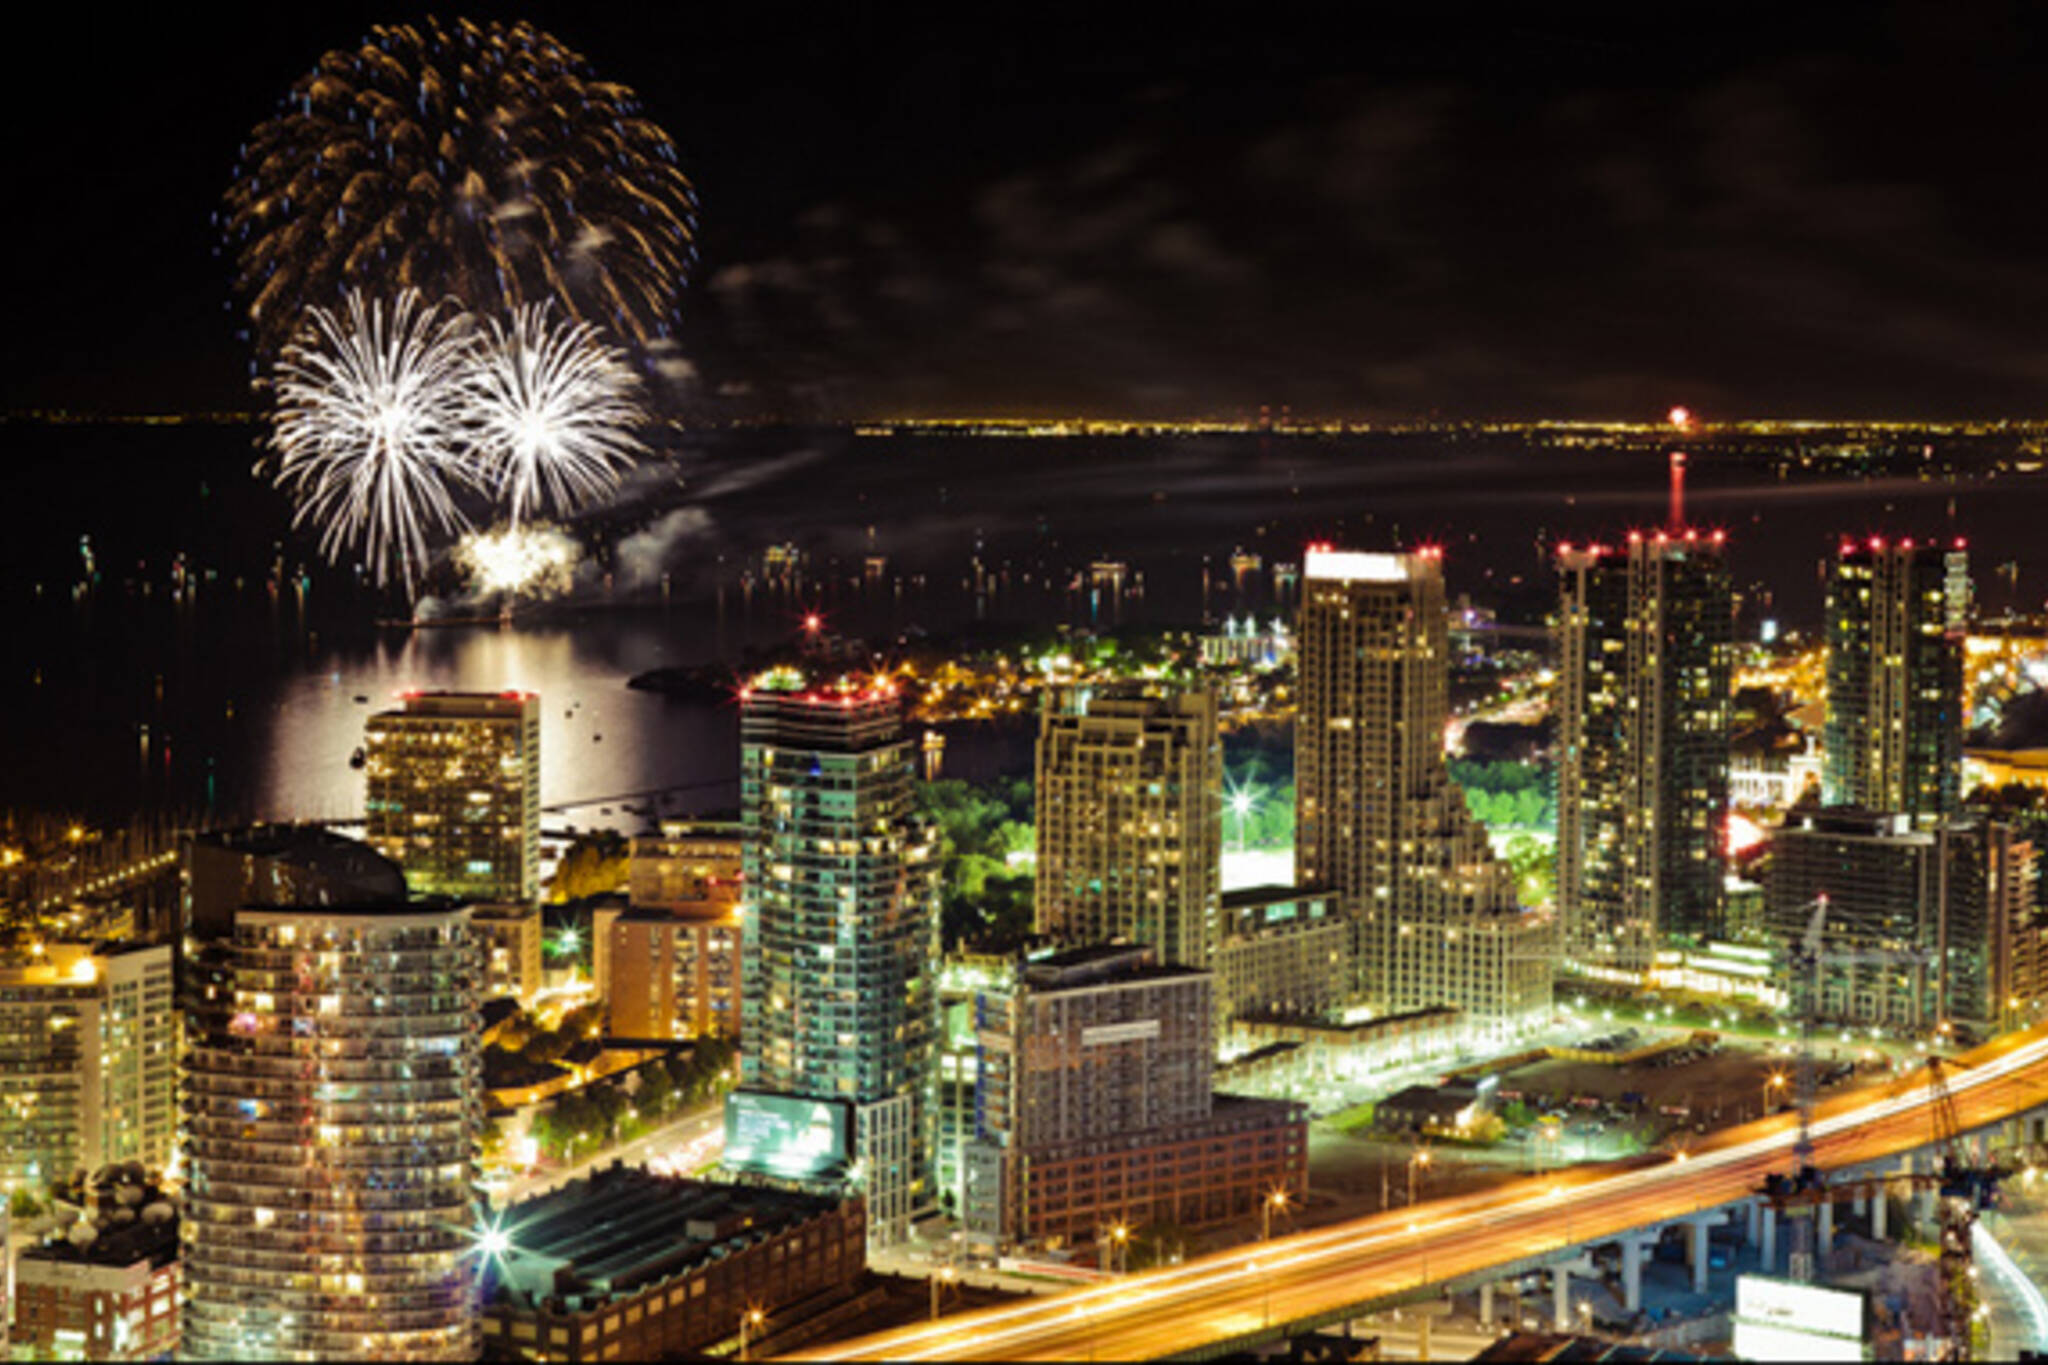 Canada Day Fireworks Toronto 2013